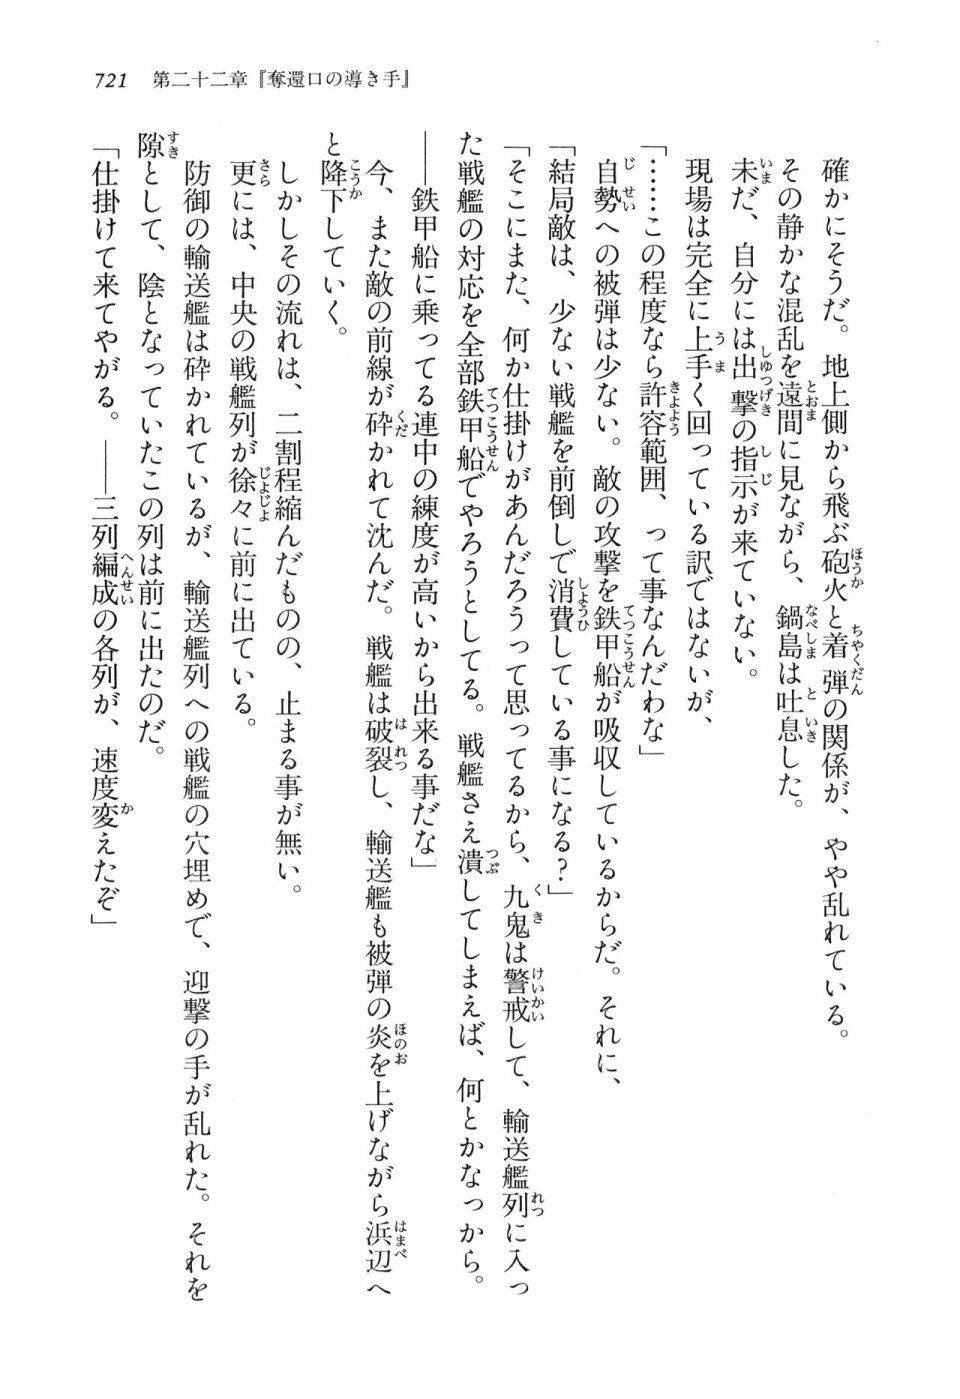 Kyoukai Senjou no Horizon LN Vol 16(7A) - Photo #721